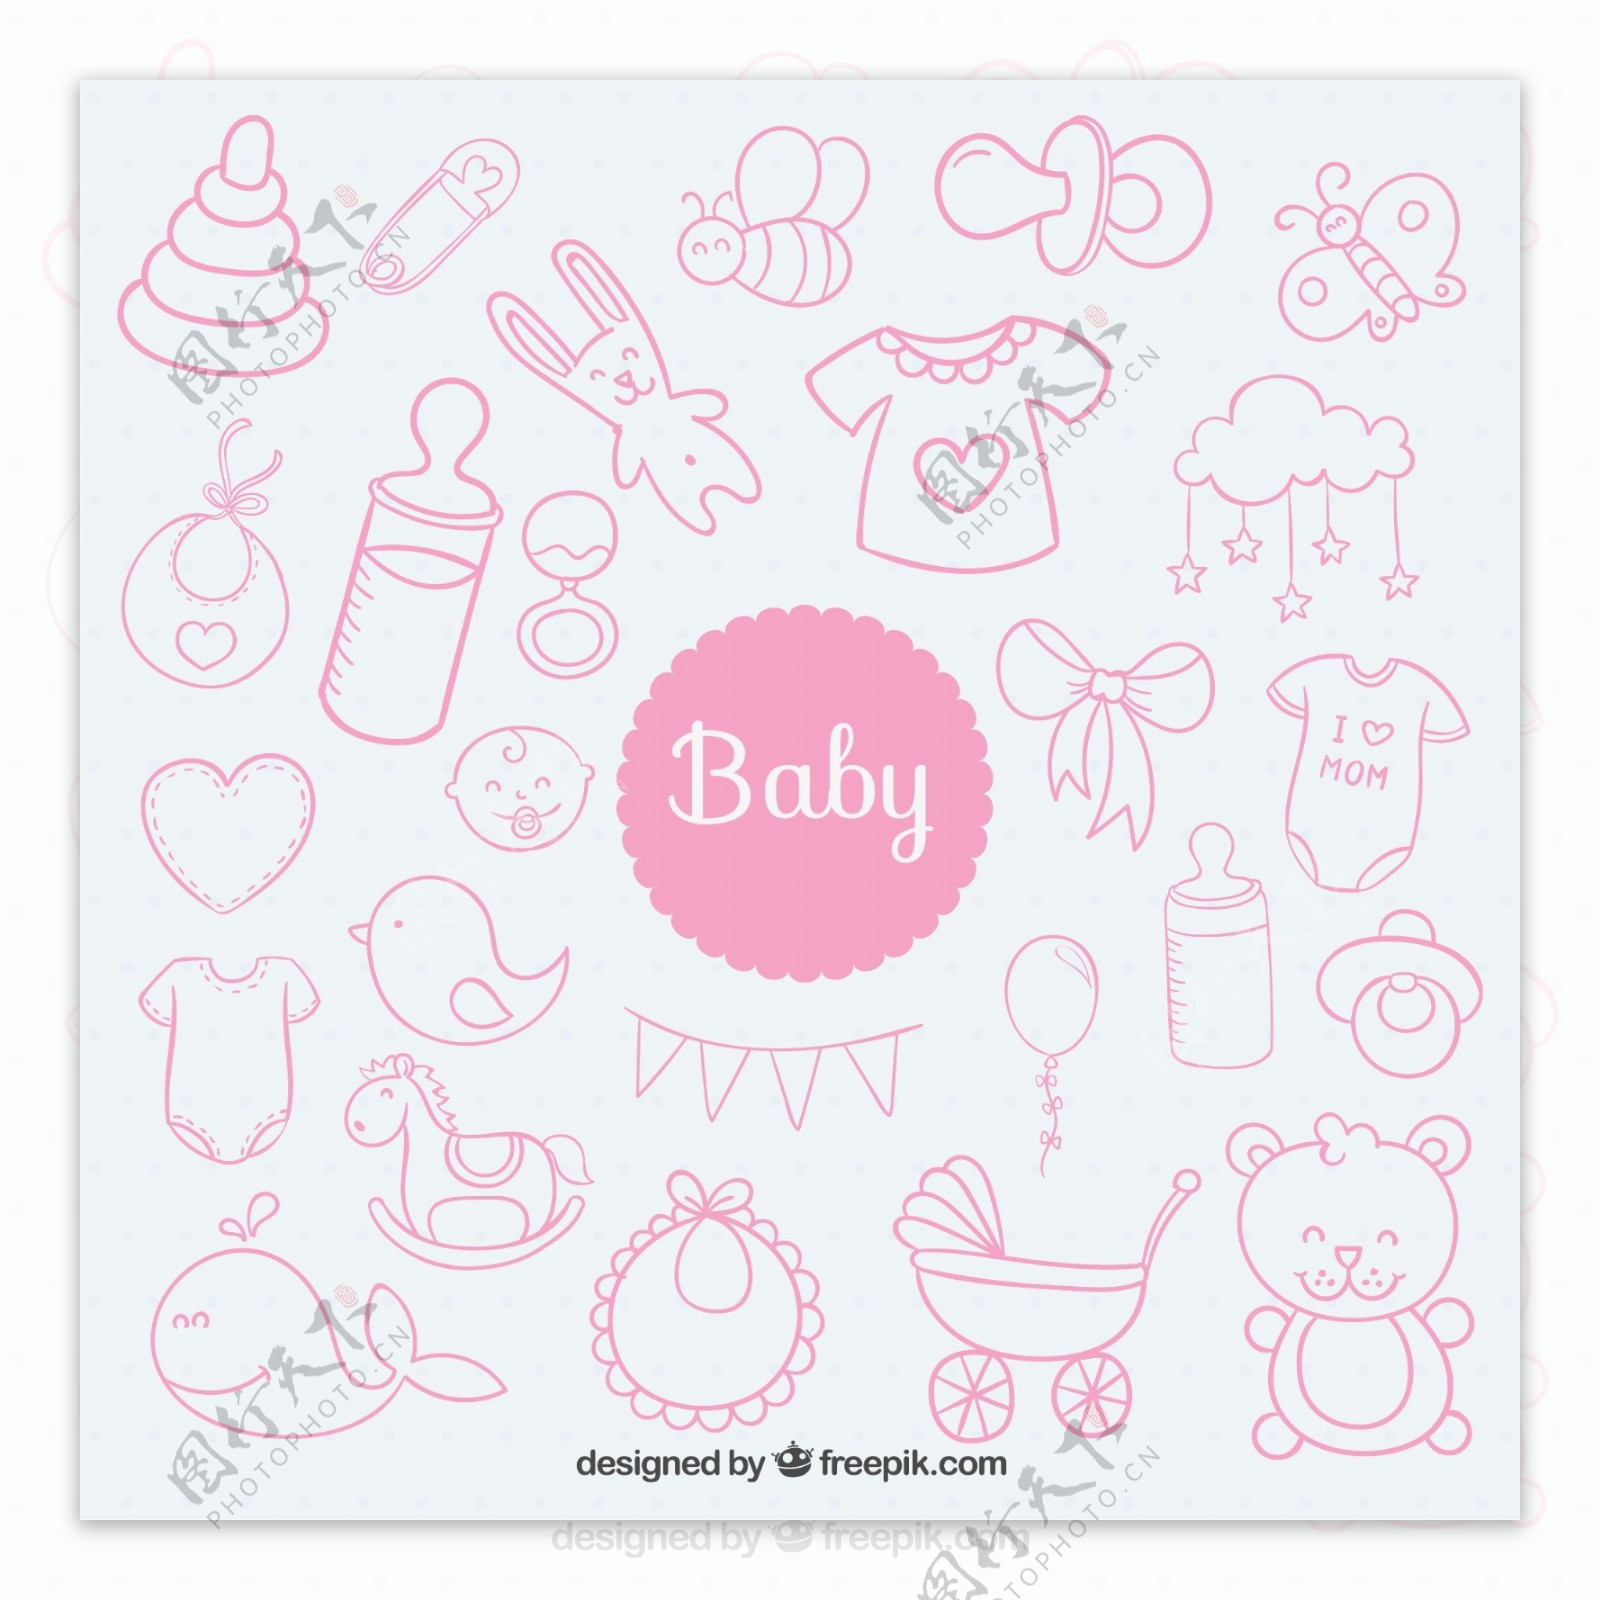 粉色婴儿用品无缝背景矢量图